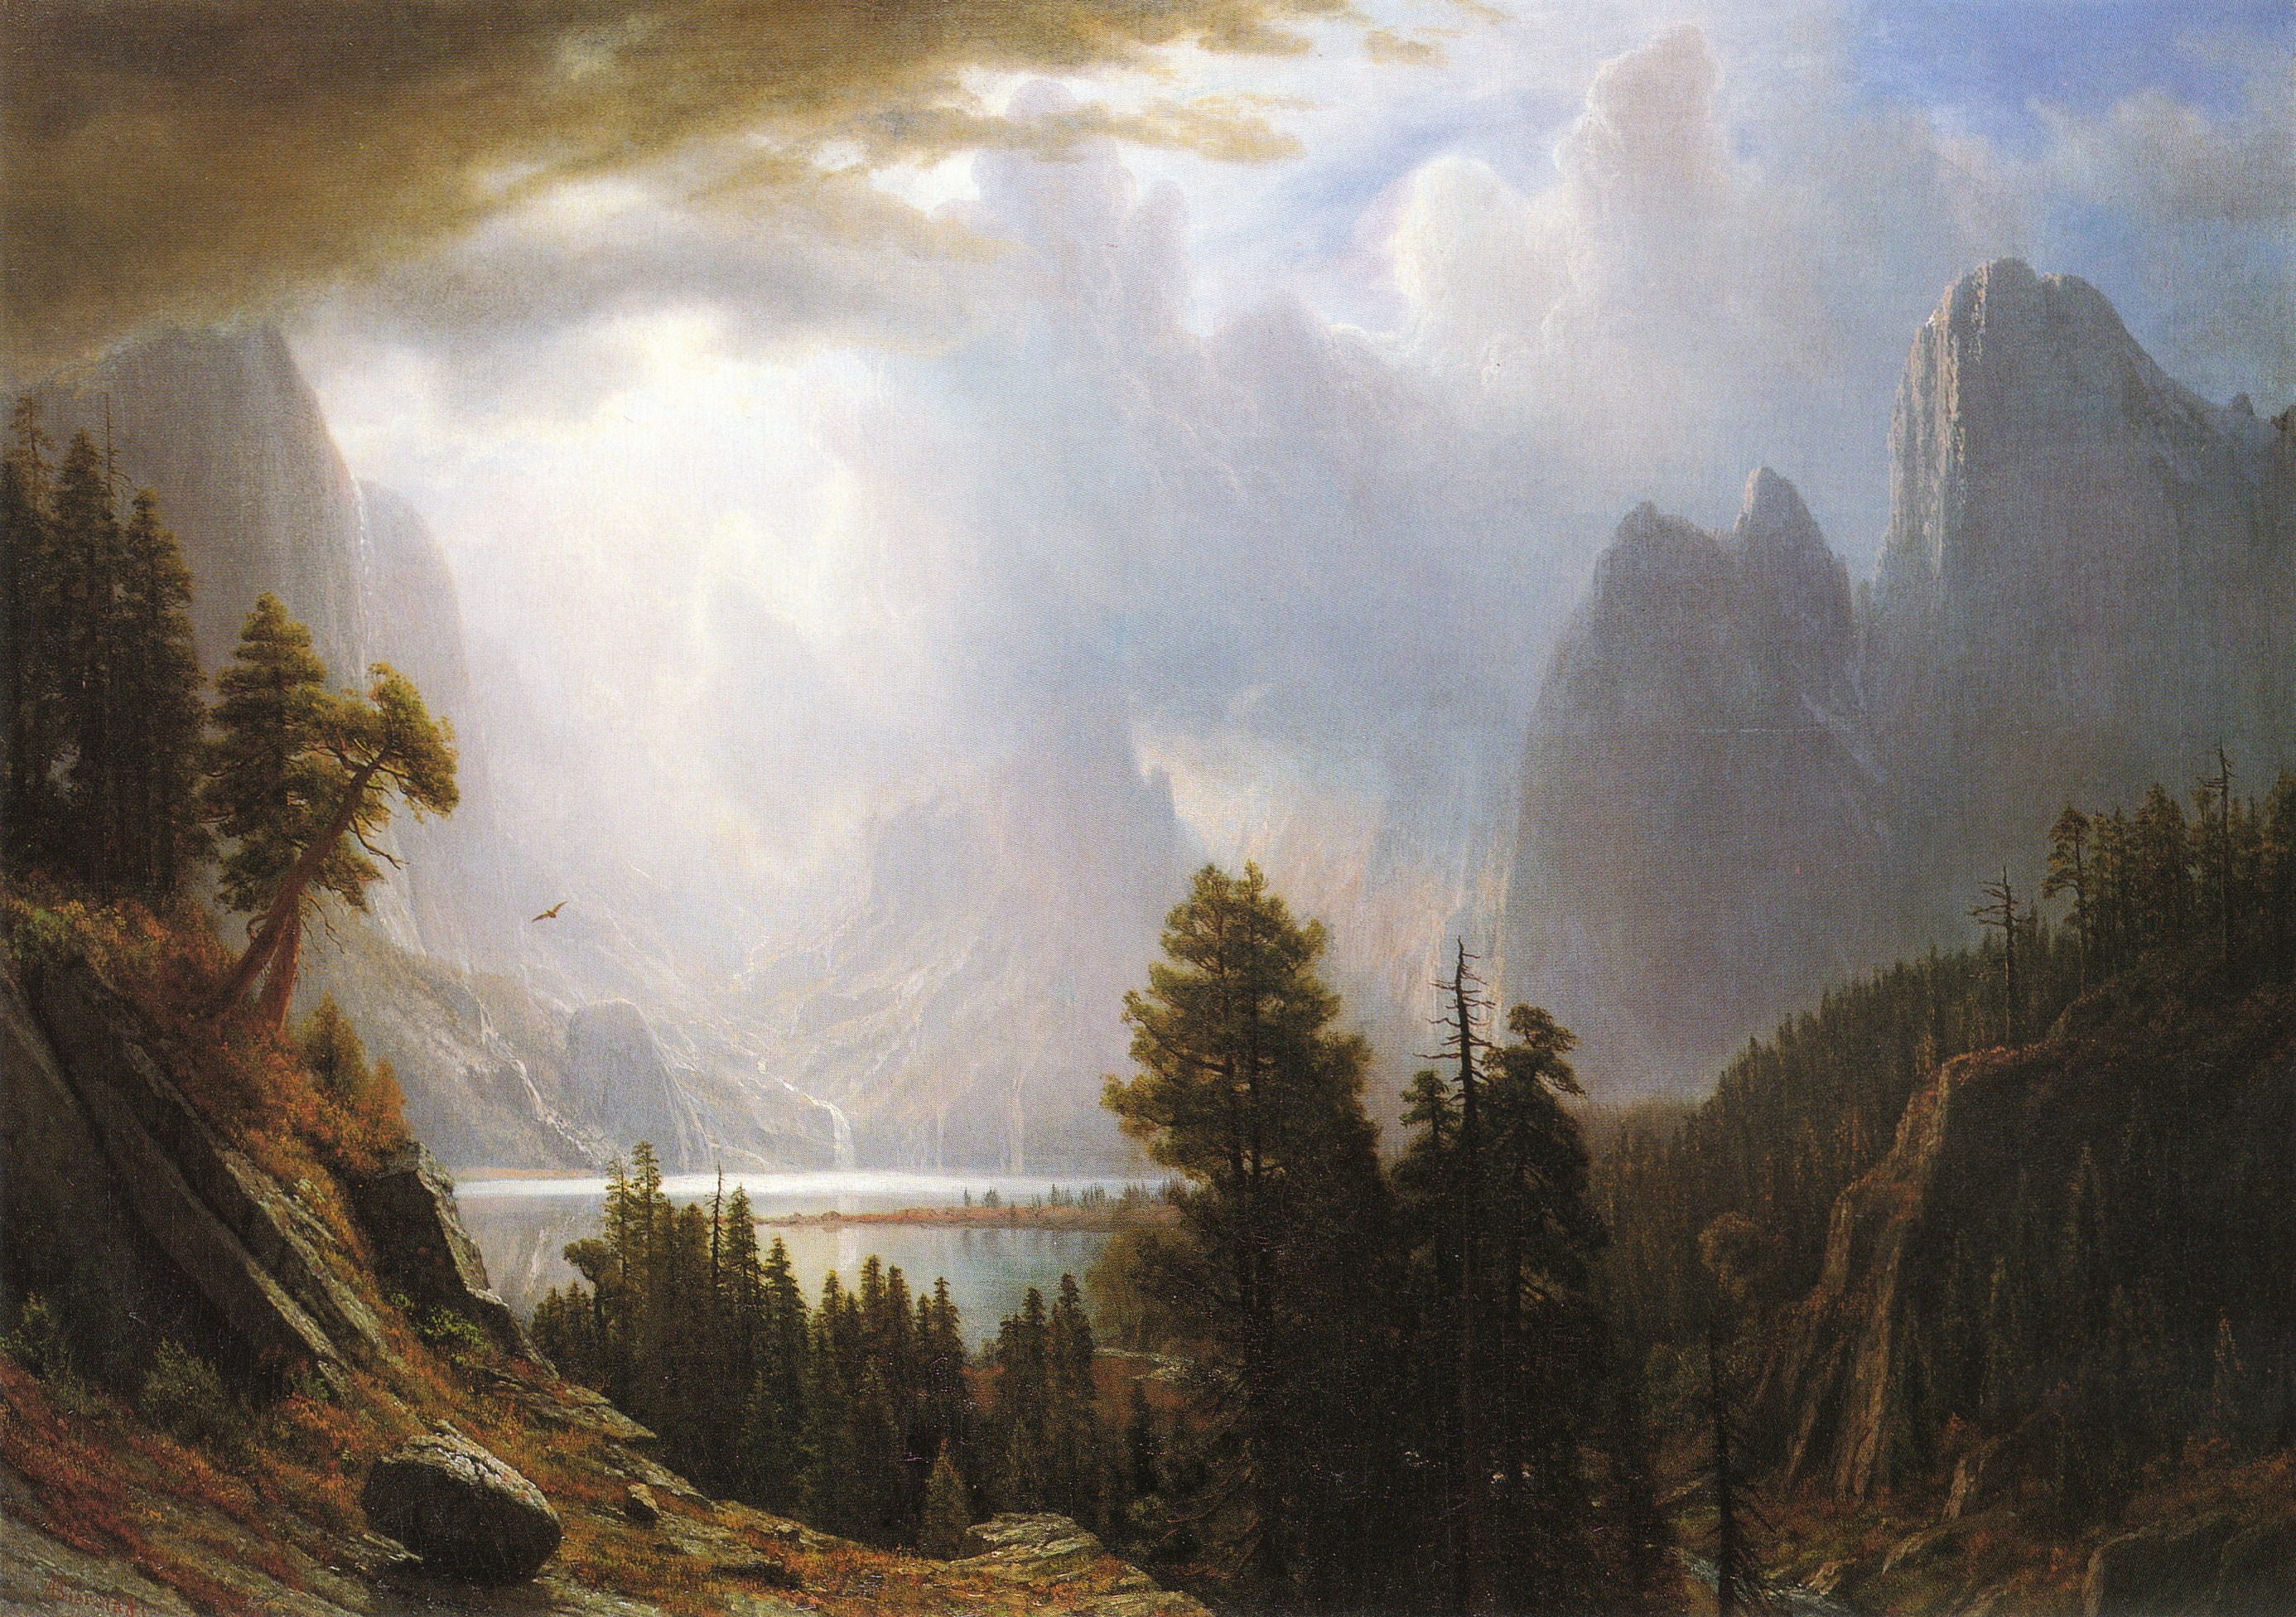 Альберт Бирштадт (1830 - 1902) – американский художник